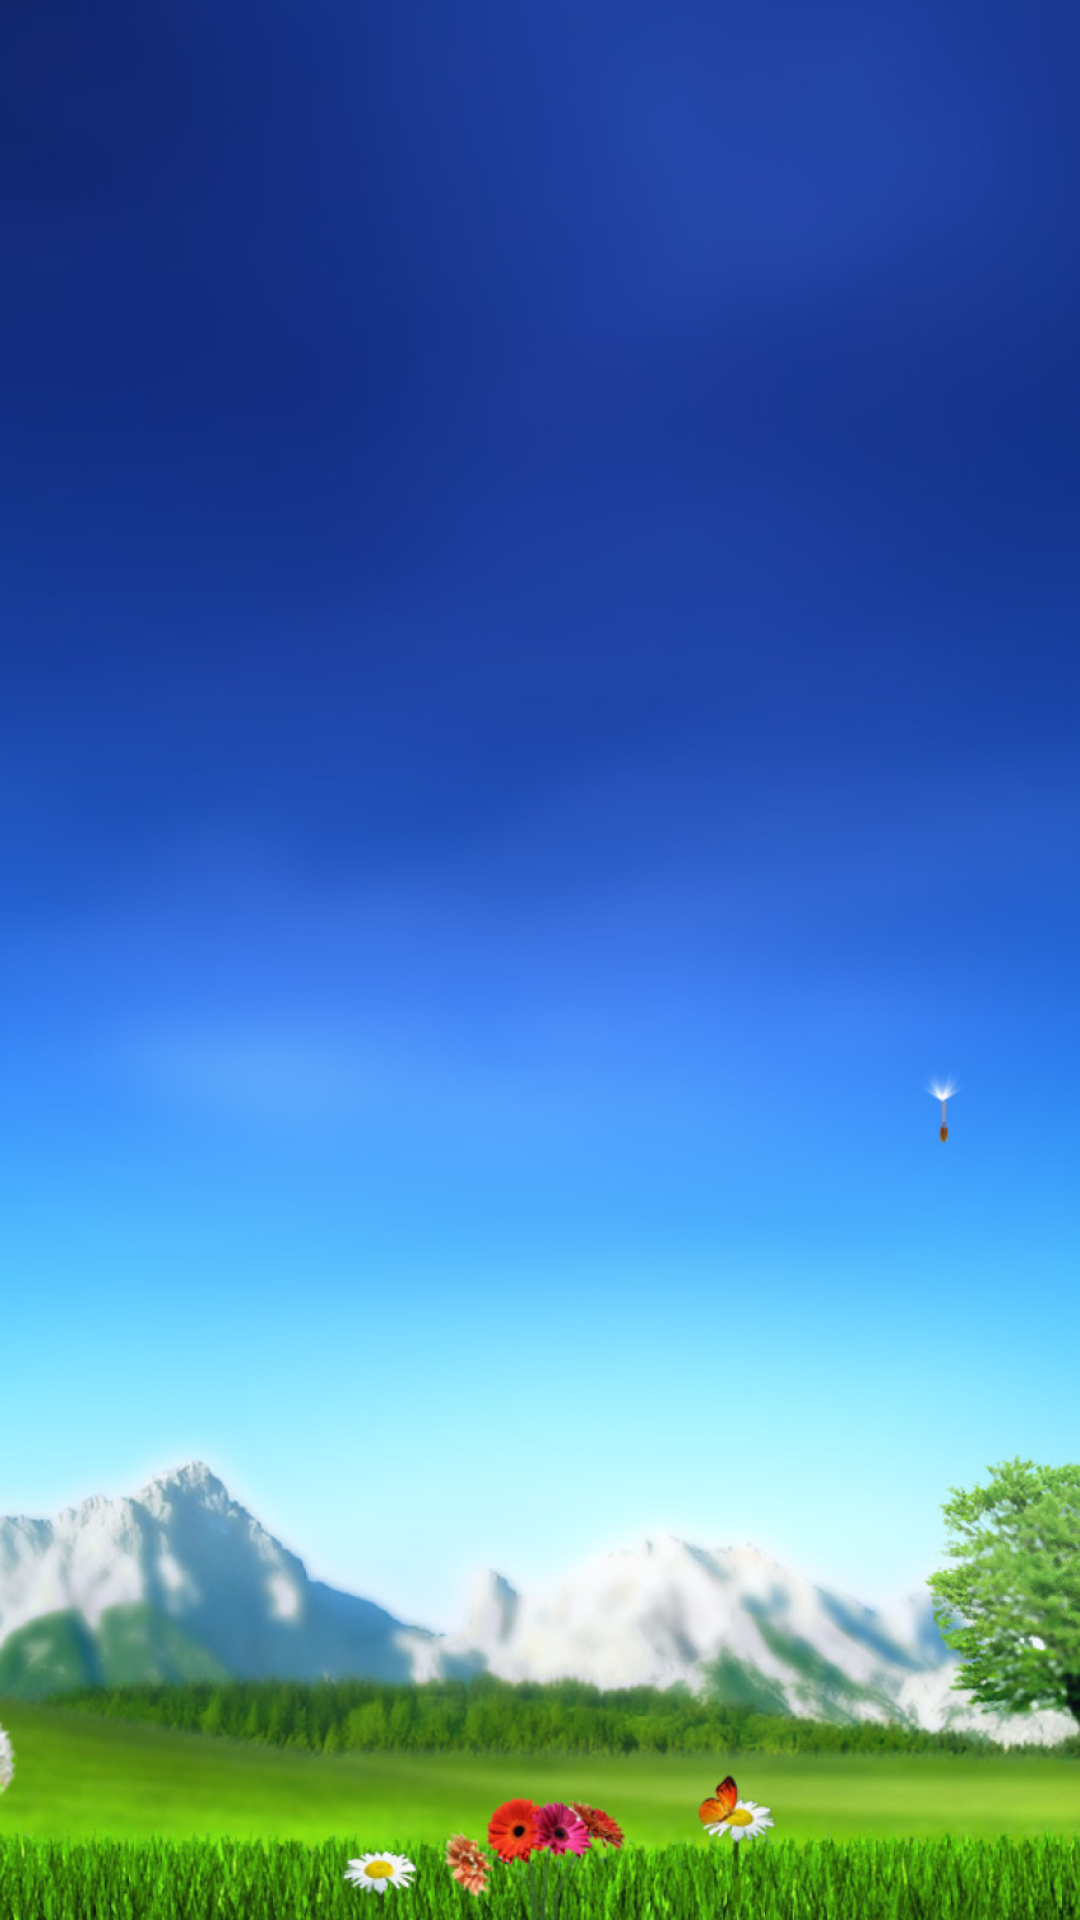 Nature Landscape Blue Sky wallpaper 1080x1920